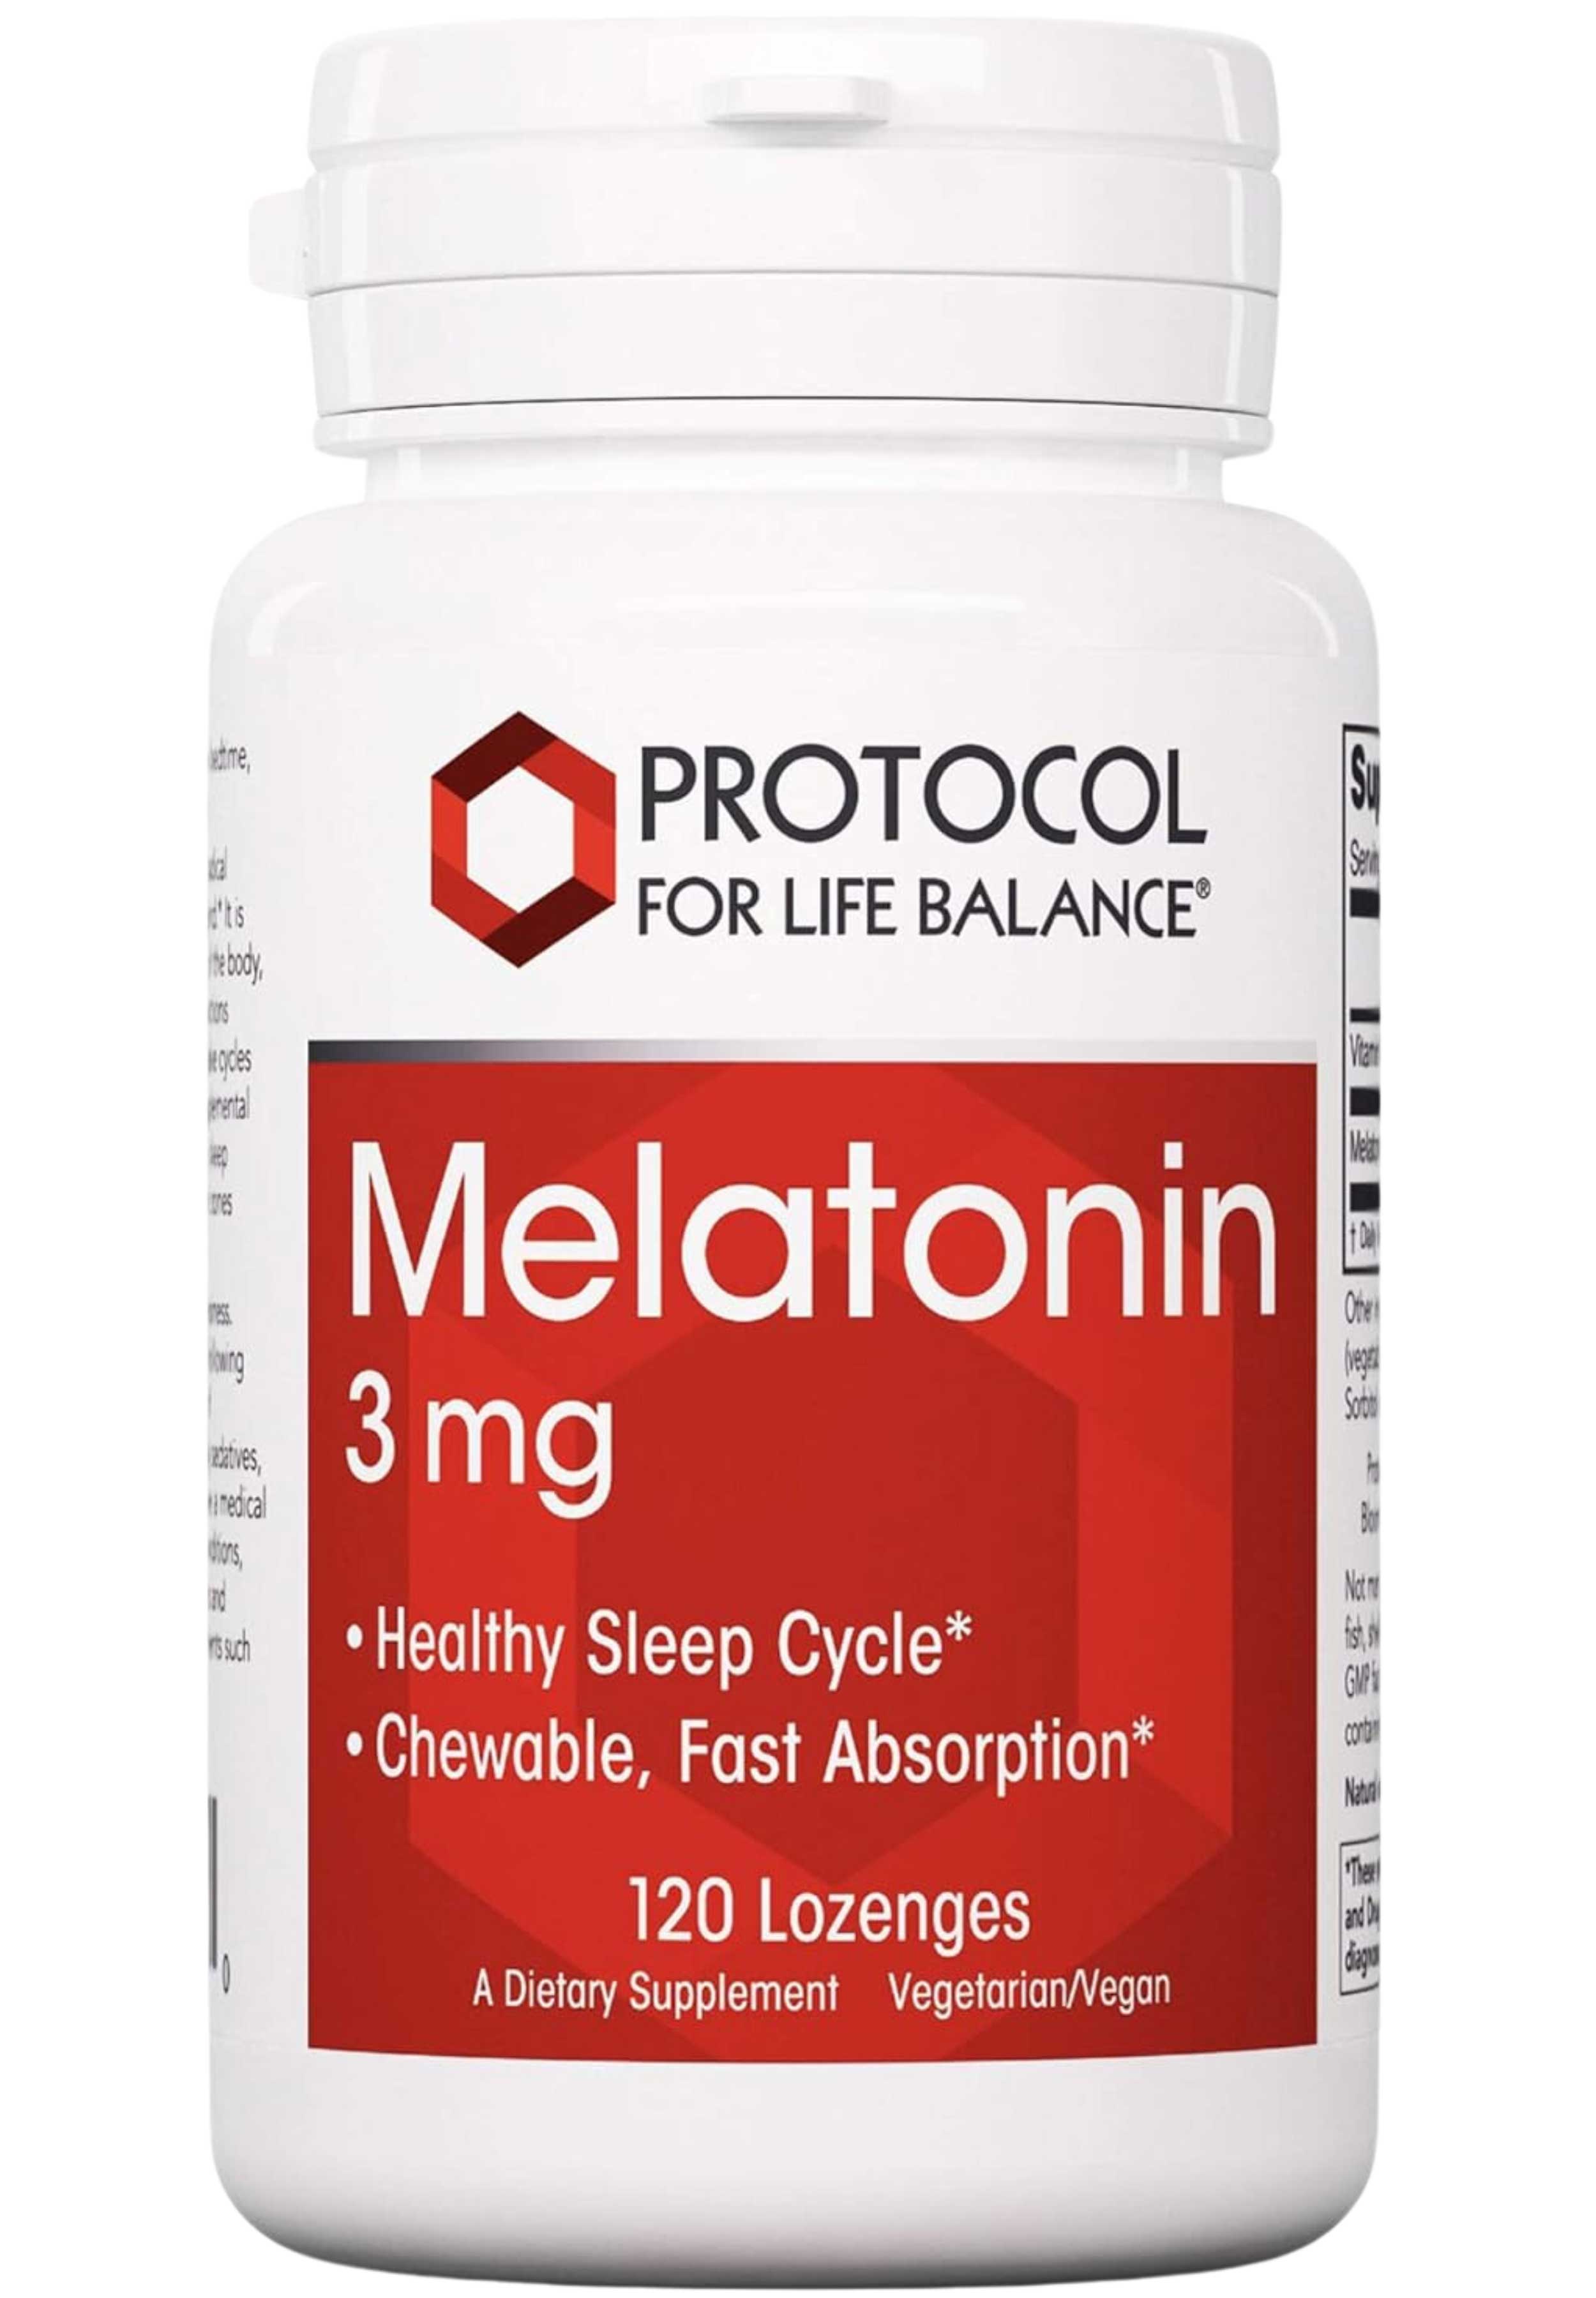 Protocol for Life Balance Melatonin 3 mg